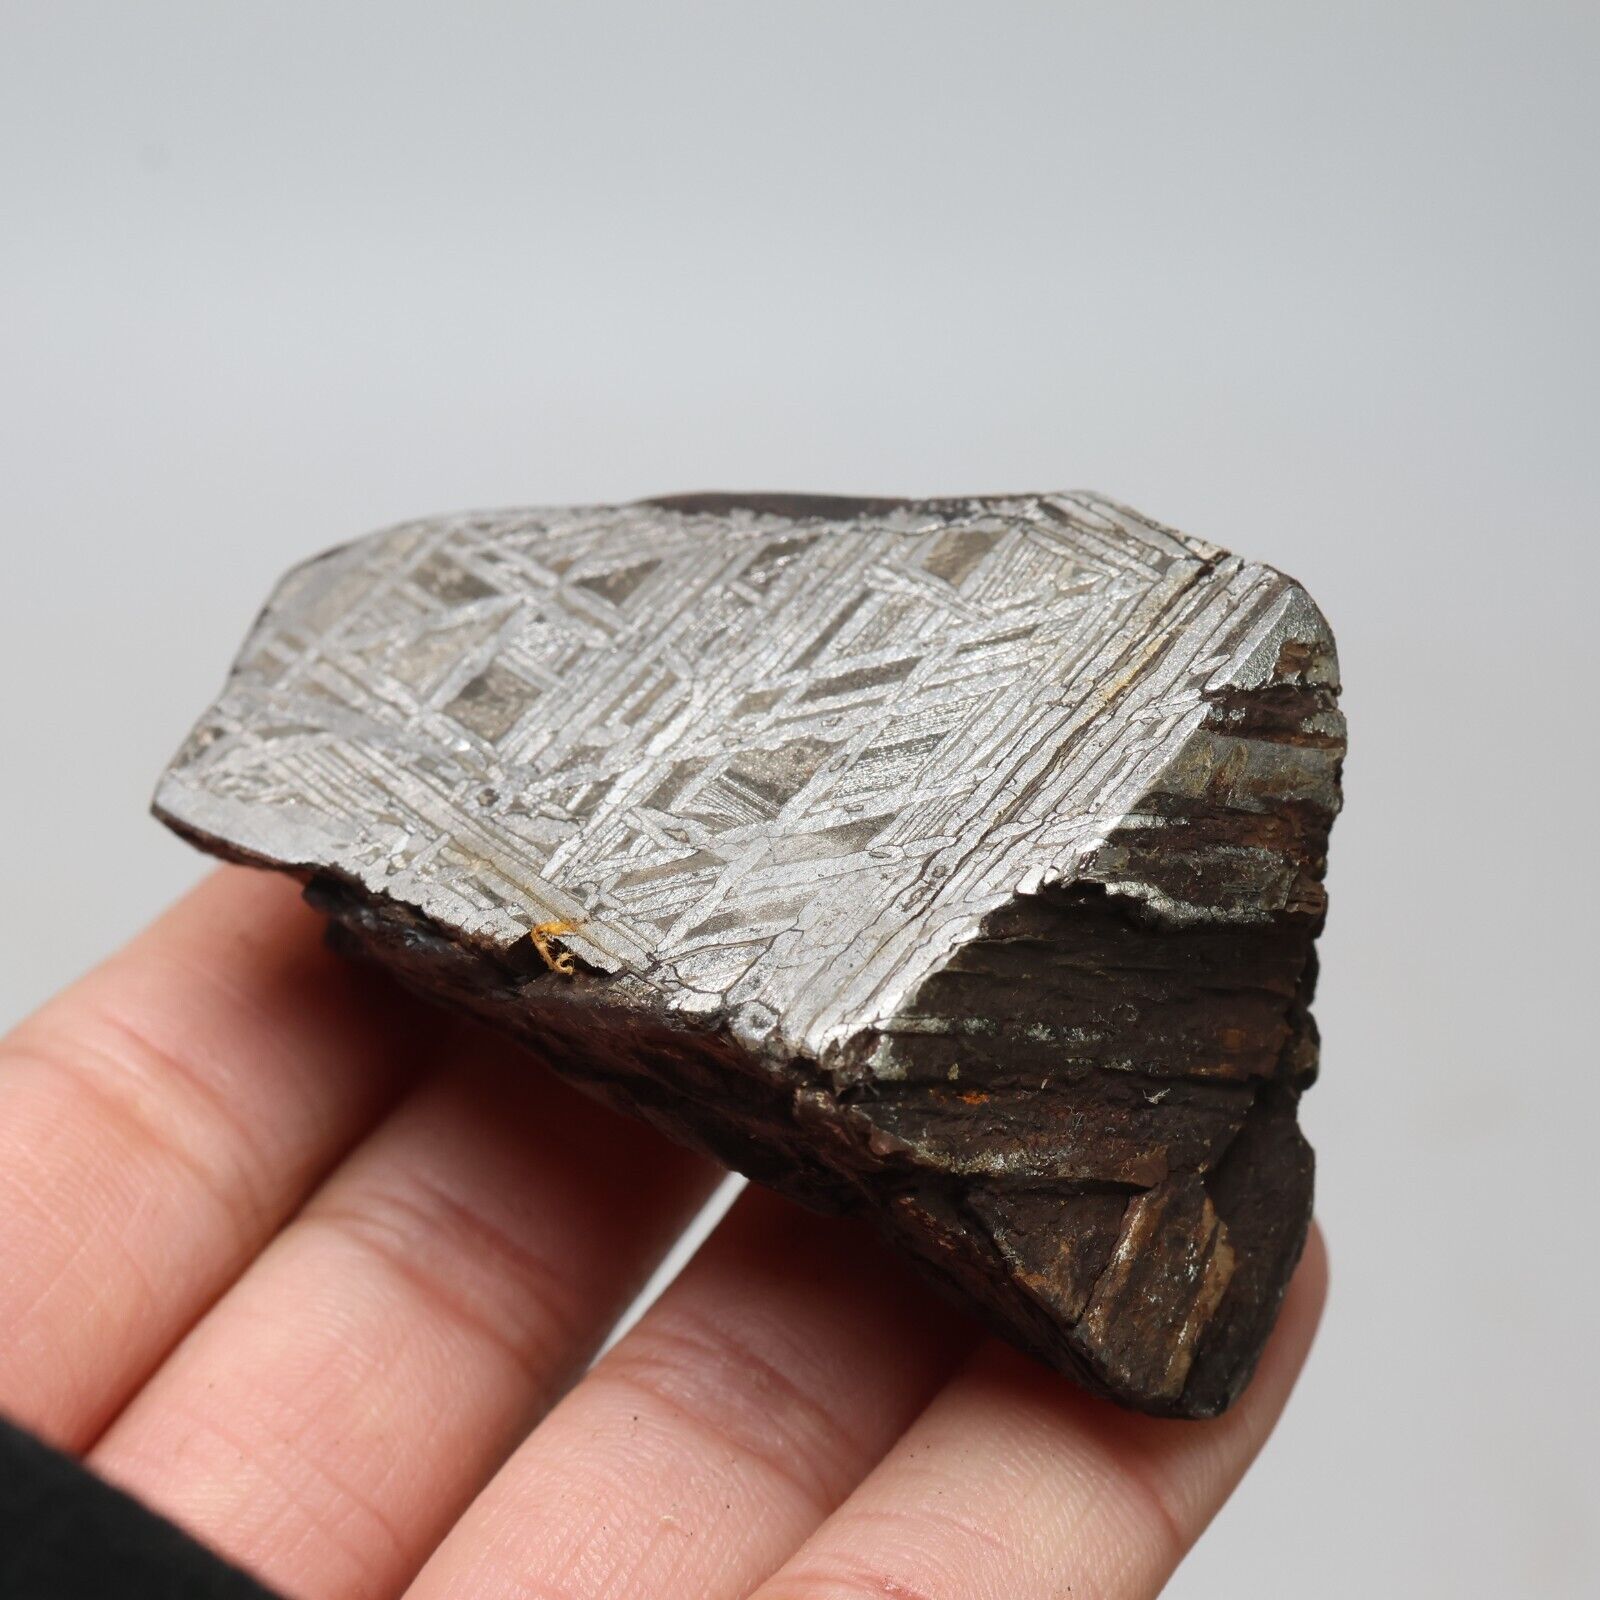 181g Muonionalusta meteorite part slice  A2080